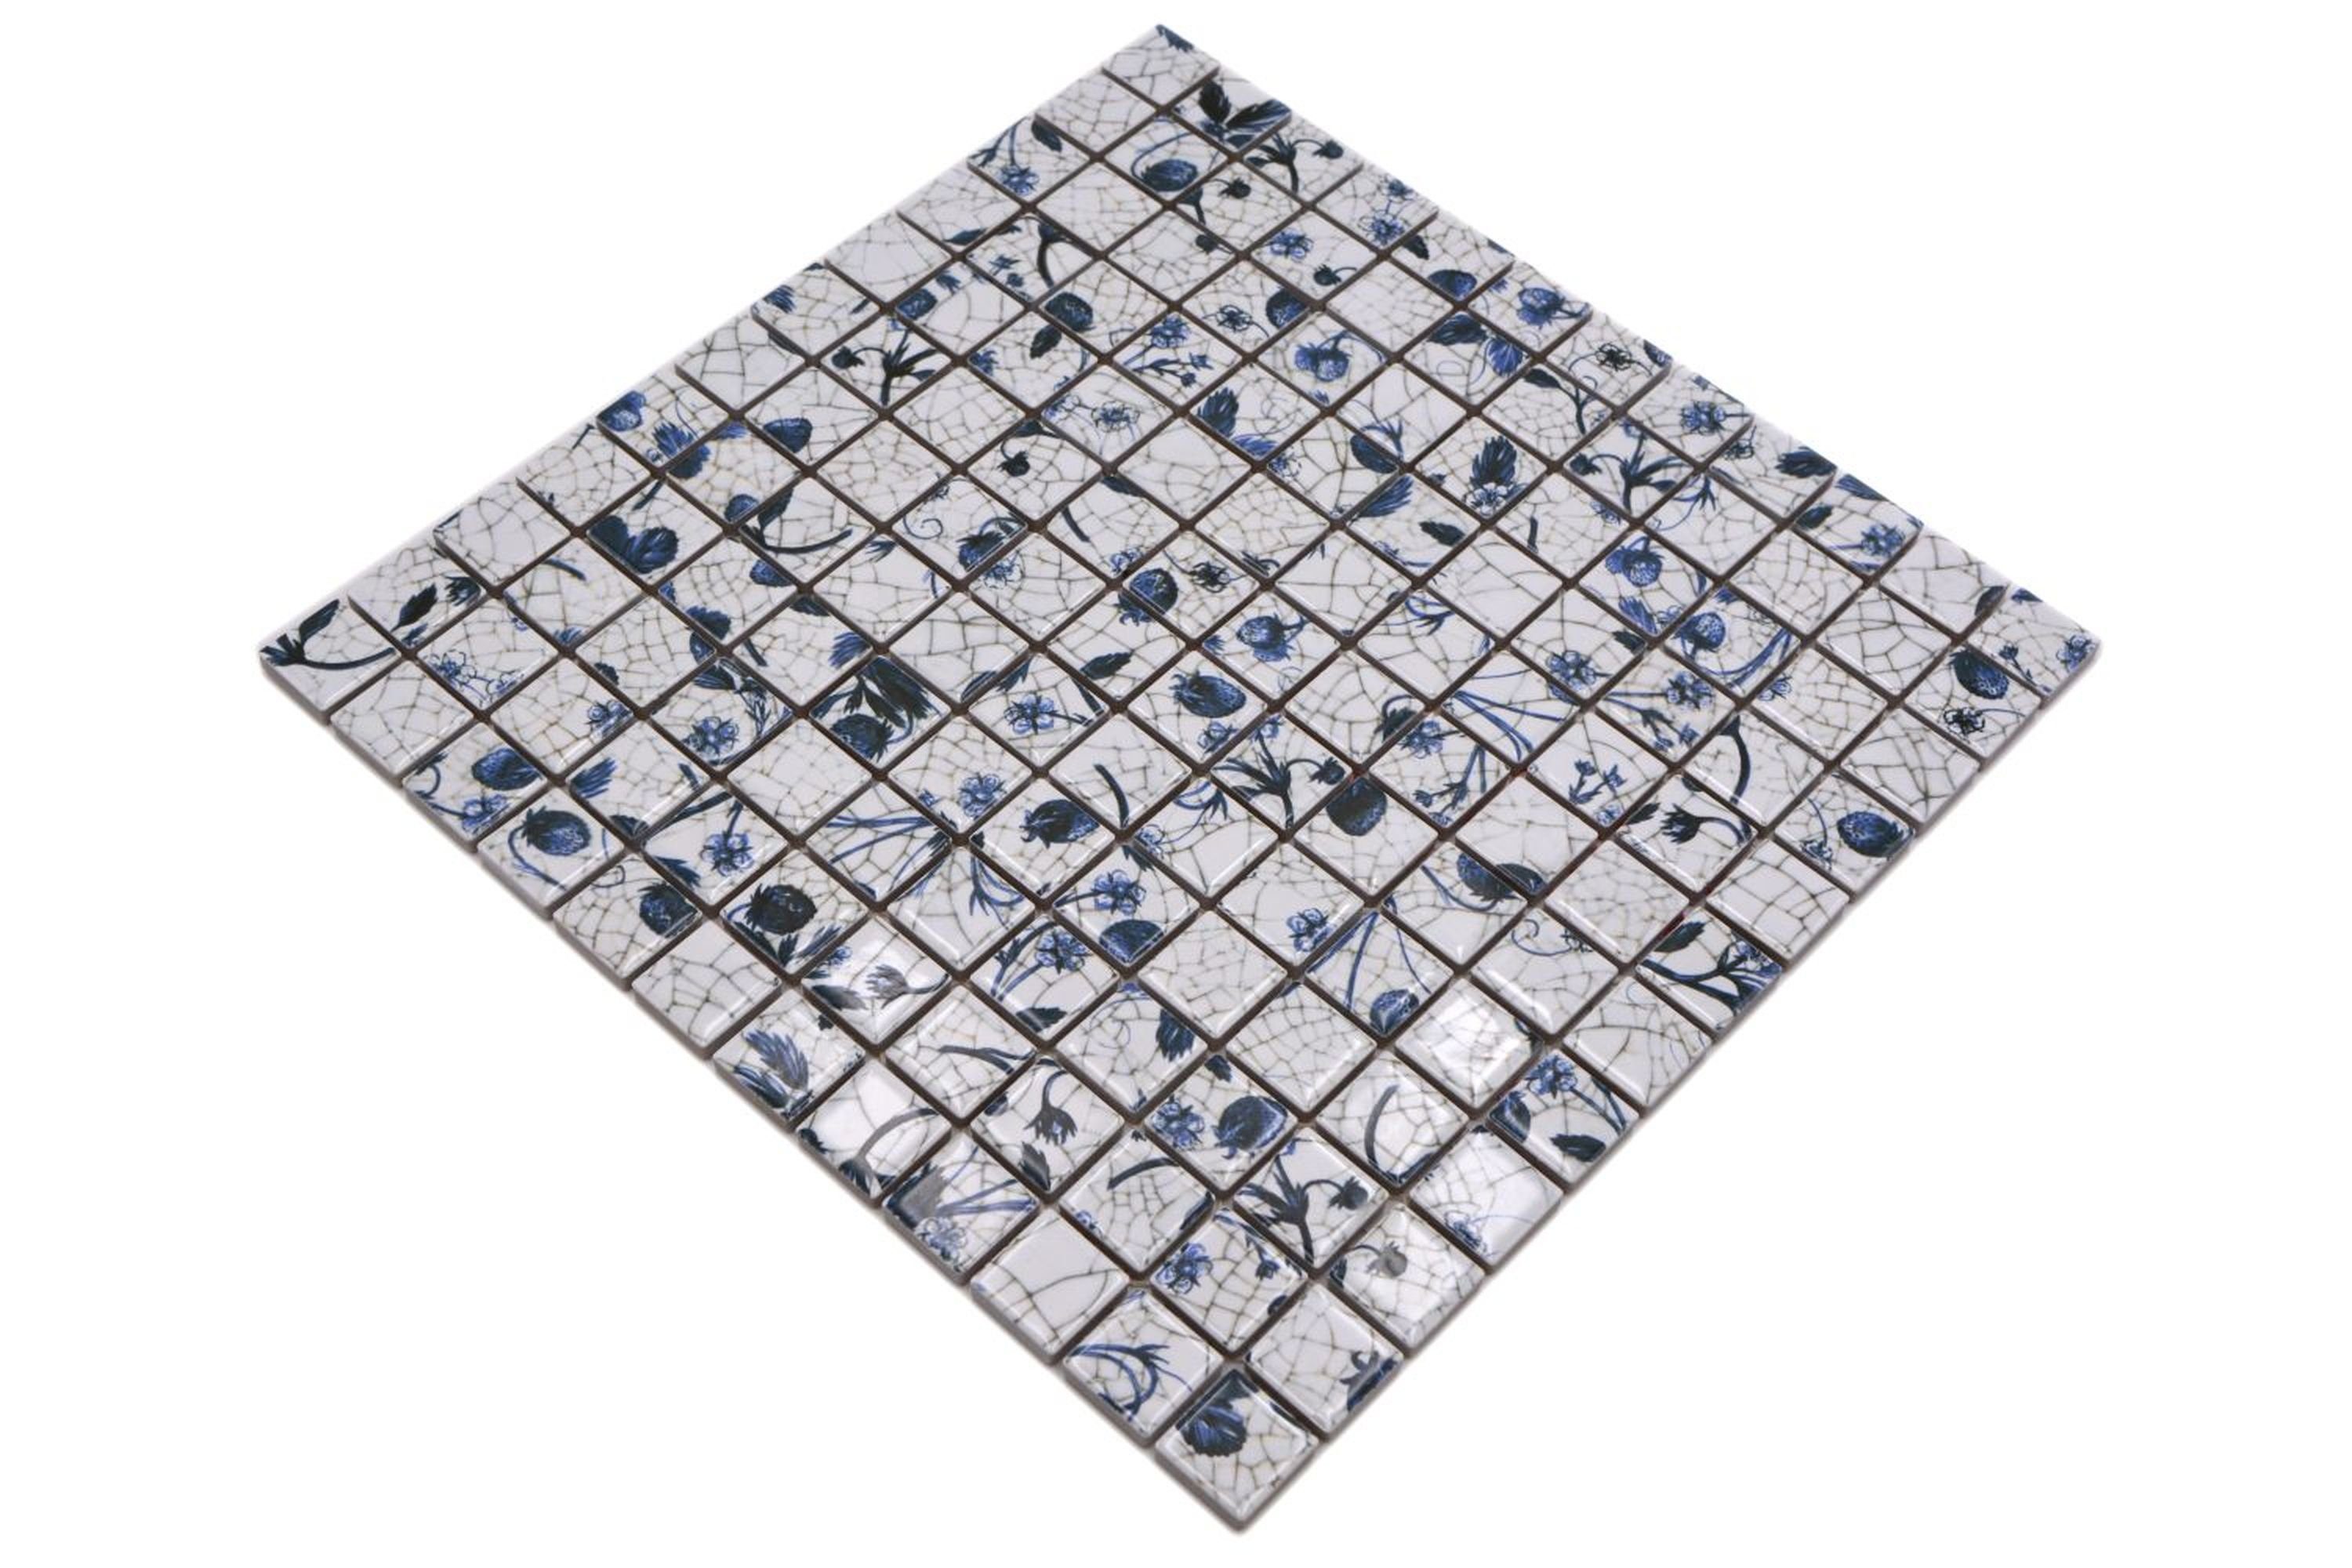 Mosani Mosaikfliesen Keramik Mosaik Blume Küche Retro Mosaikfliese Vintage weiß blaue